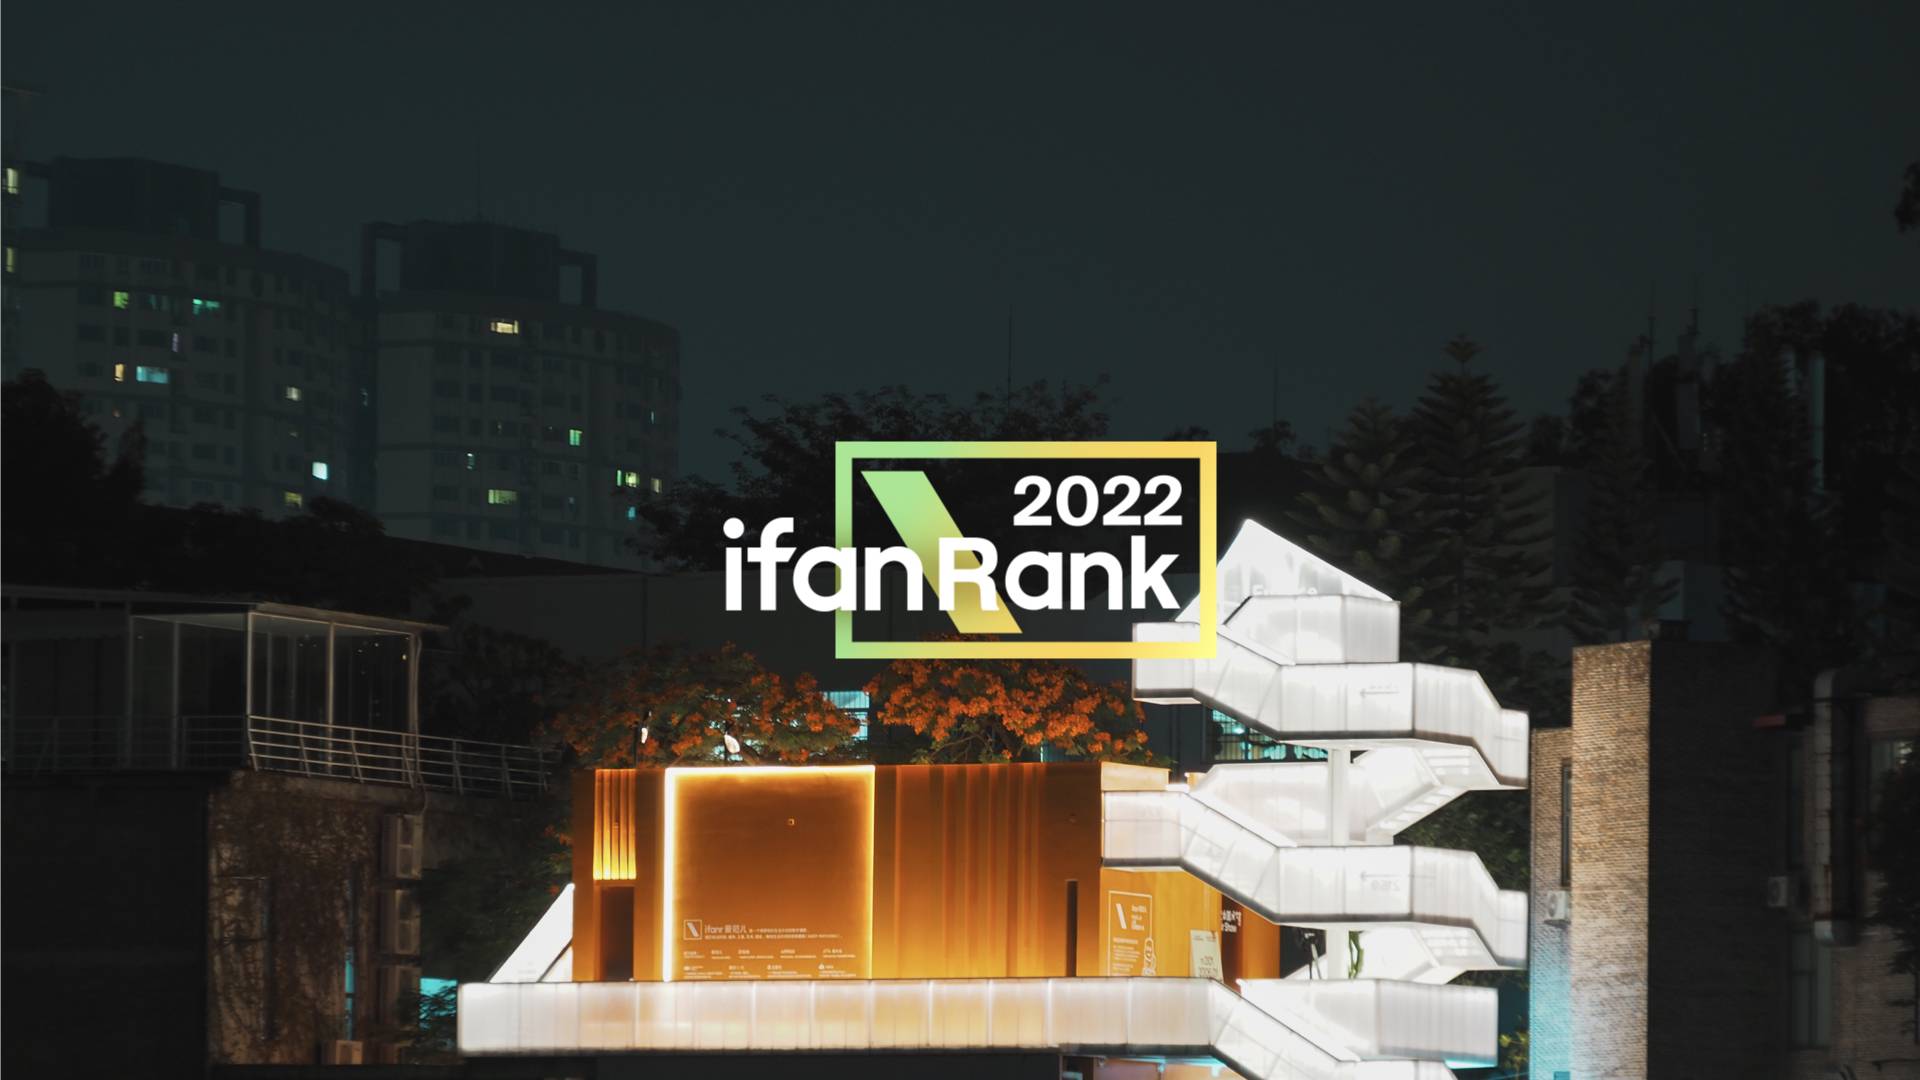 ifanrrank.001 - 2023, come migliorare | ifanRank